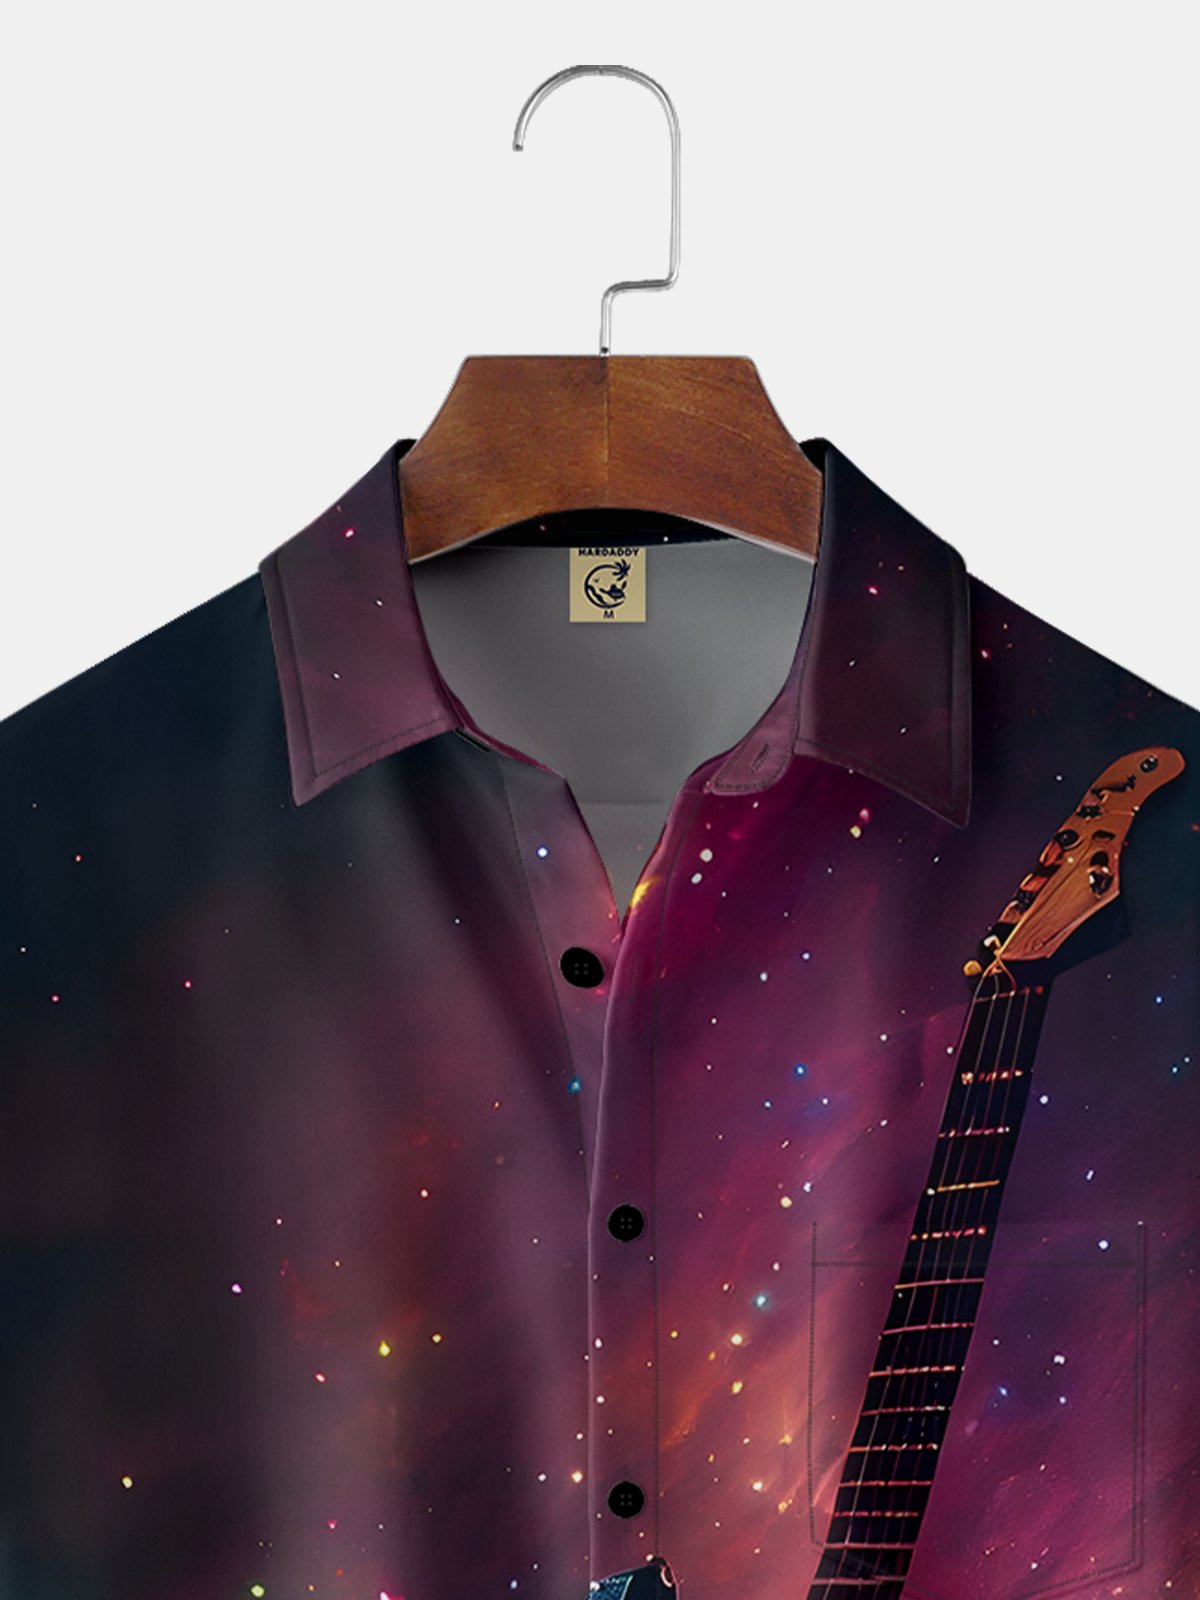 Moisture-wicking Music Guitar Chest Pocket Hawaiian Shirt